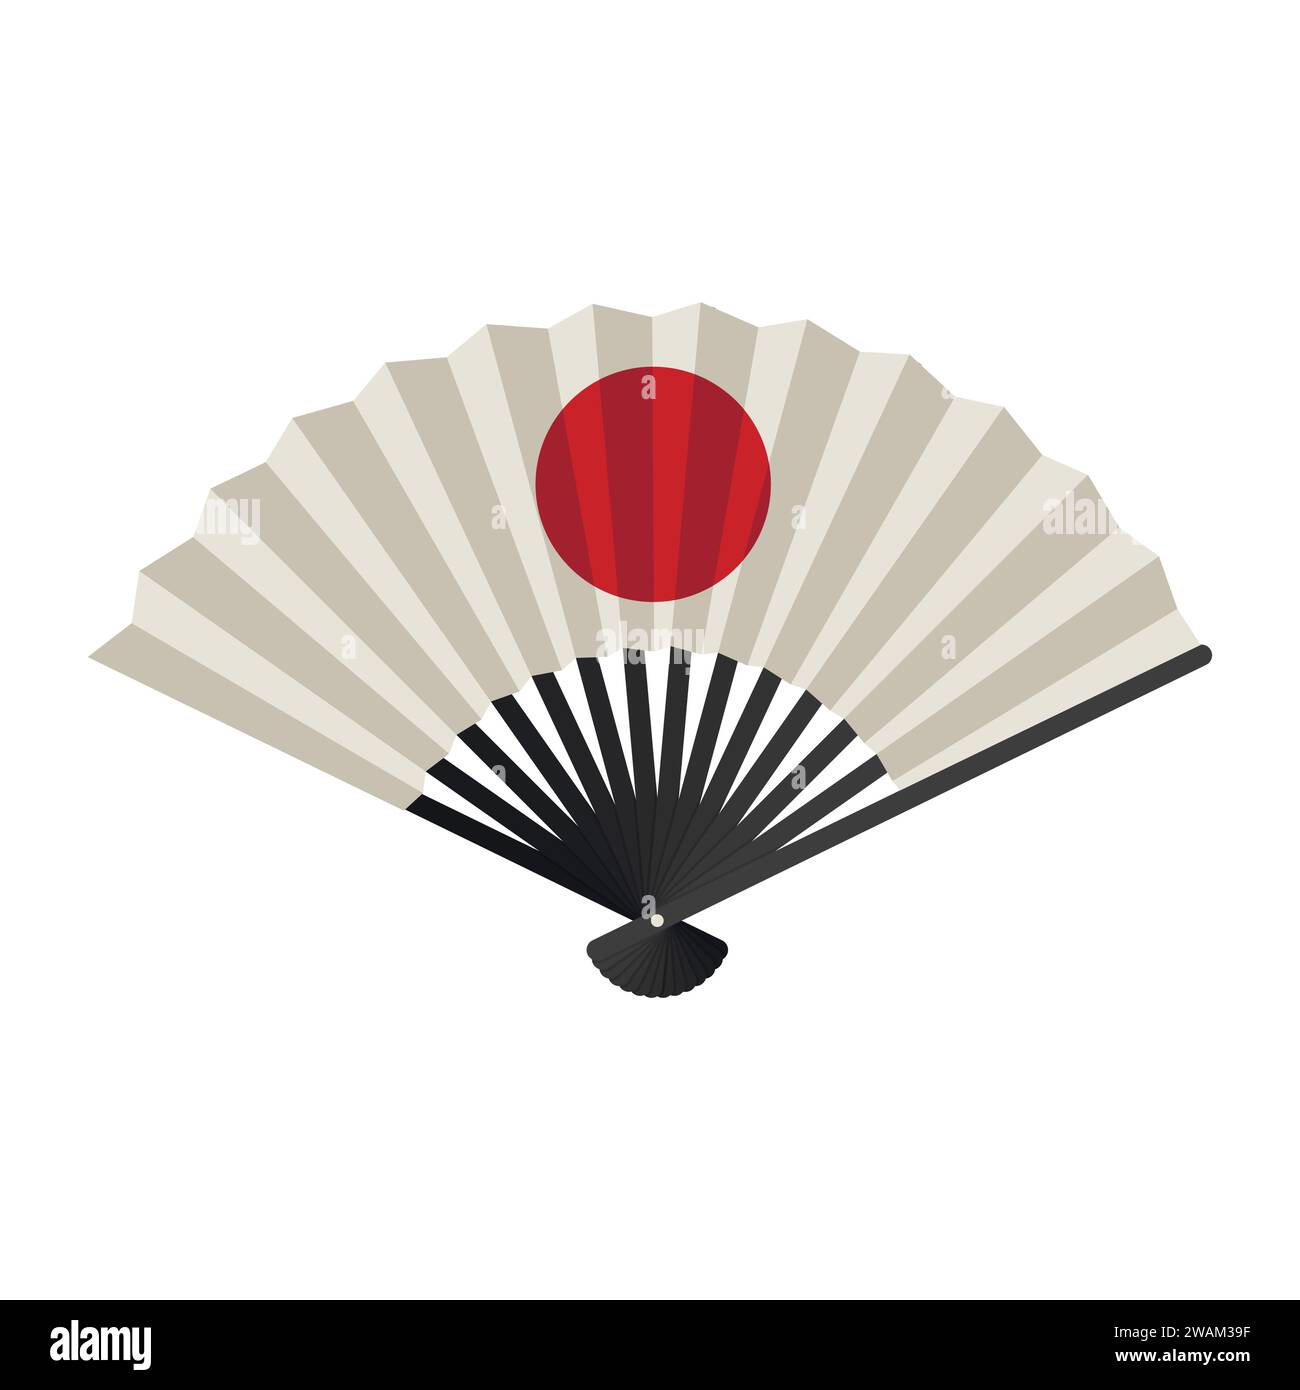 Handventilator isoliert auf weißem Hintergrund, japanischer faltender Ventilator mit aufsteigendem Sonnenschild, traditionelle asiatische Papier-Geisha-Fan-Ikone. Vektorabbildung Stock Vektor